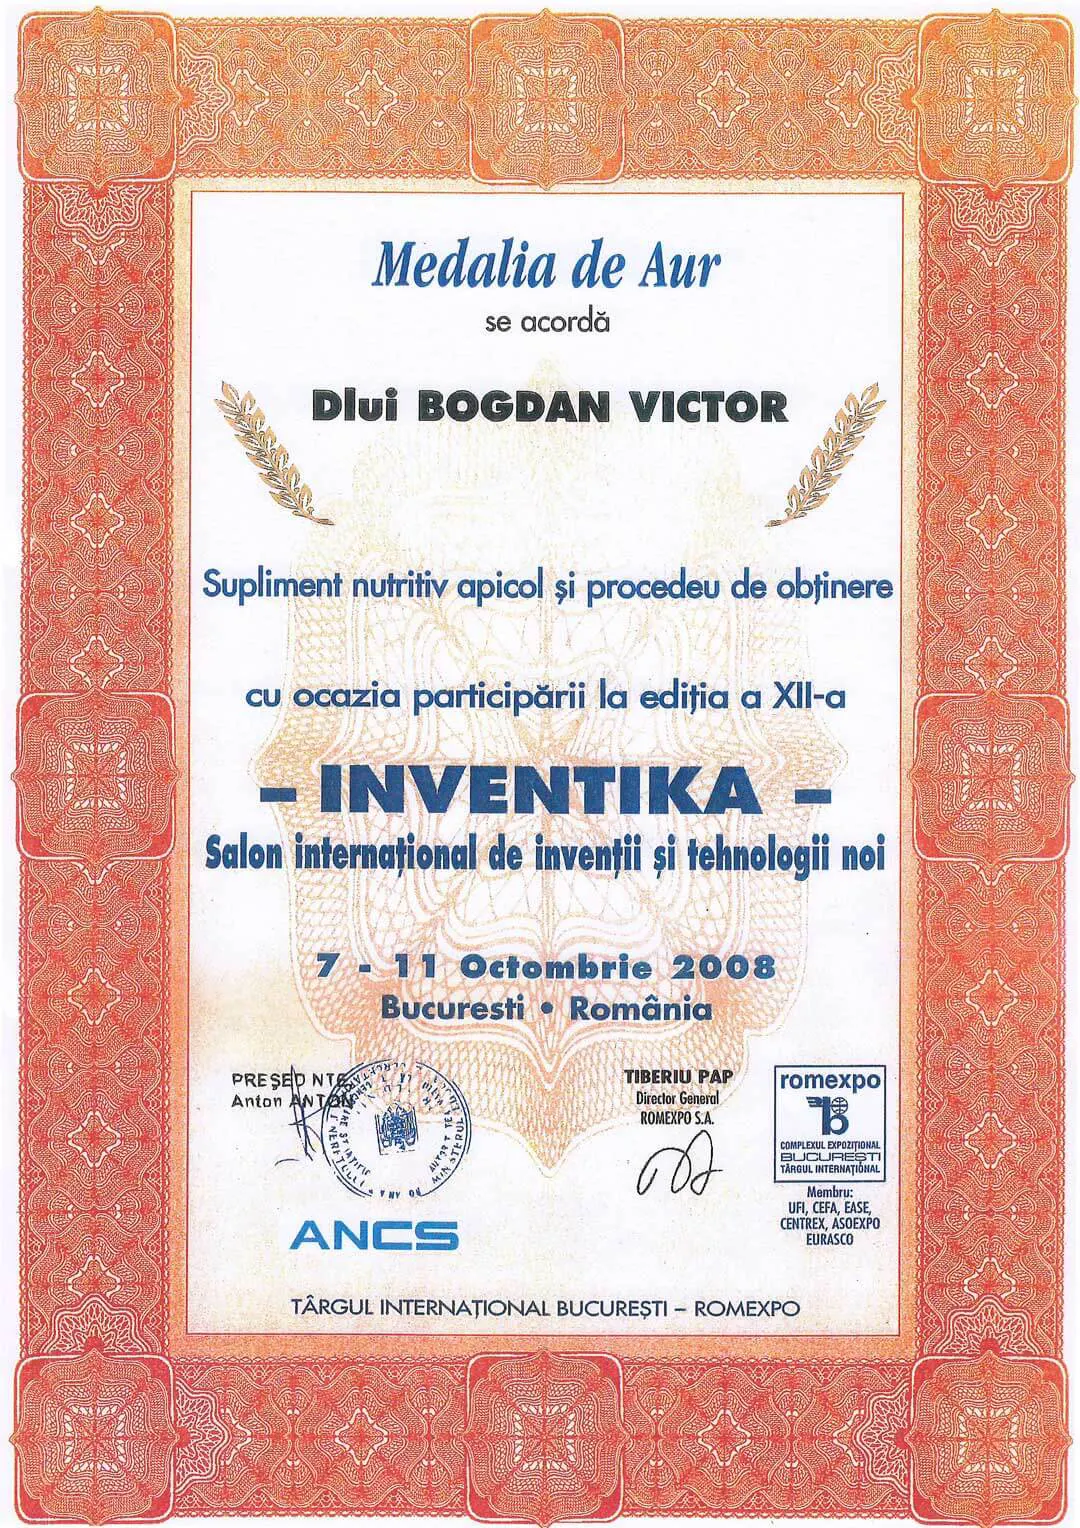 Medalia de aur Bucuresti